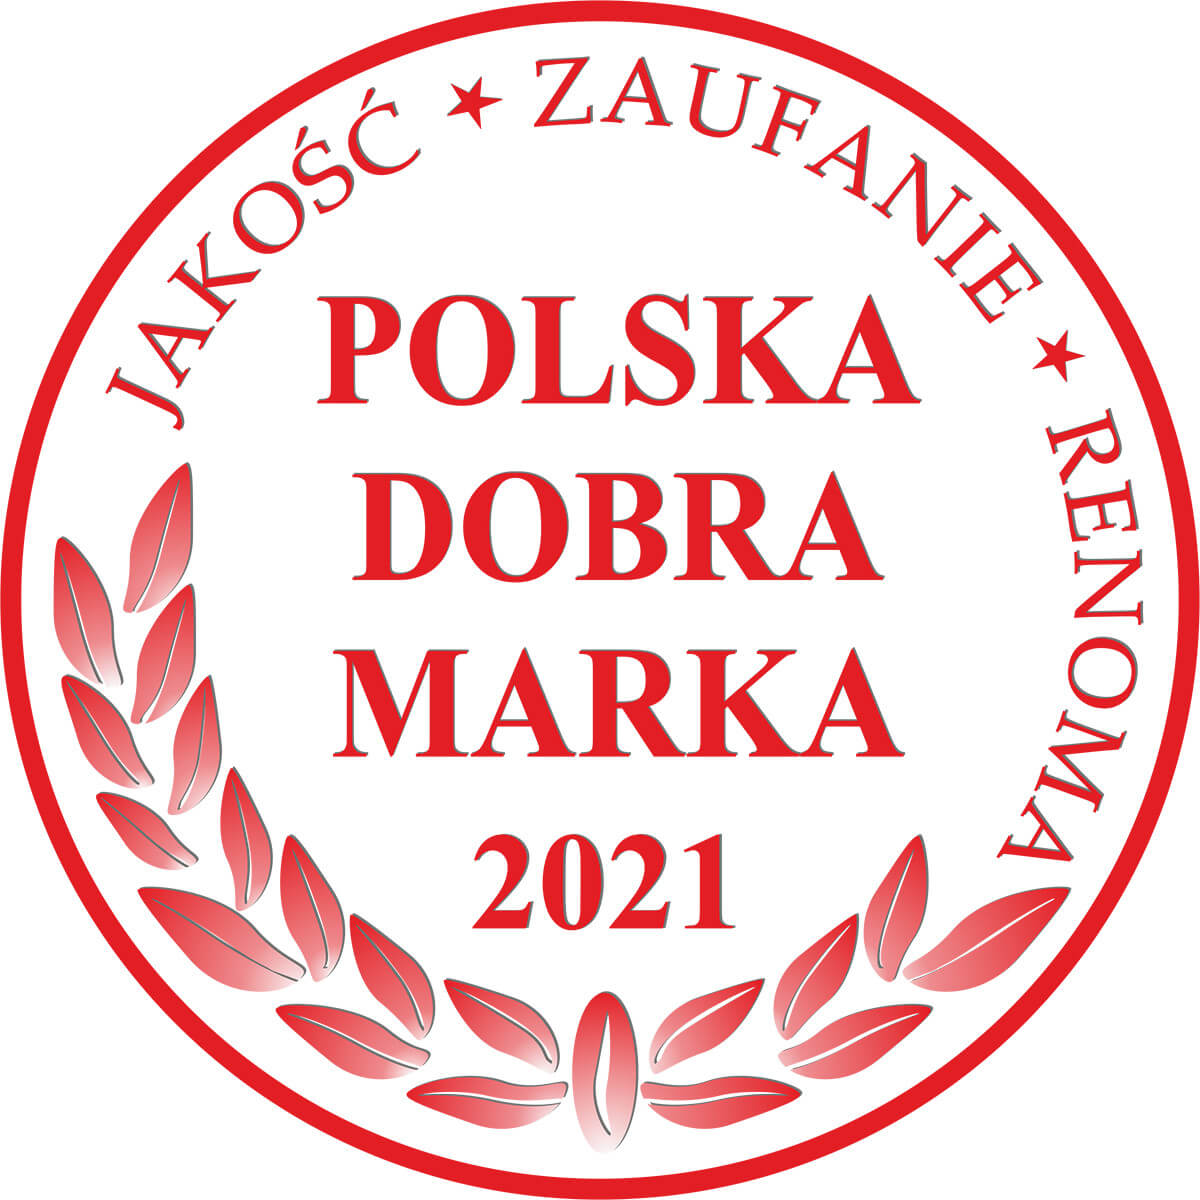 POLISH GOOD BRAND 2021